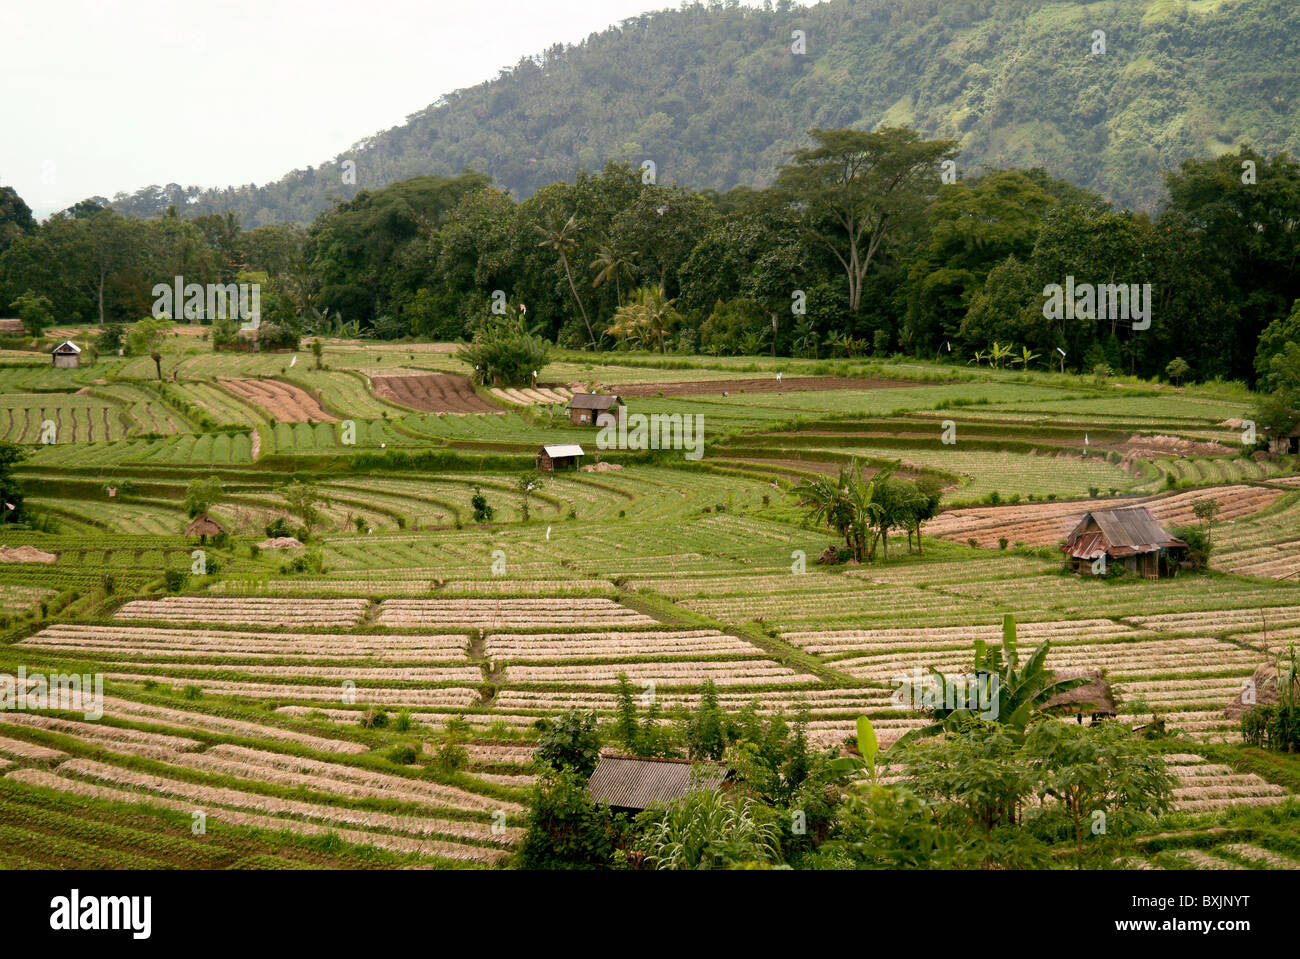 Dans le village d'Iseh, Bali, Indonésie, les rizières en terrasses sont en  rotation avec d'autres cultures afin d'améliorer la viabilité des sols  Photo Stock - Alamy